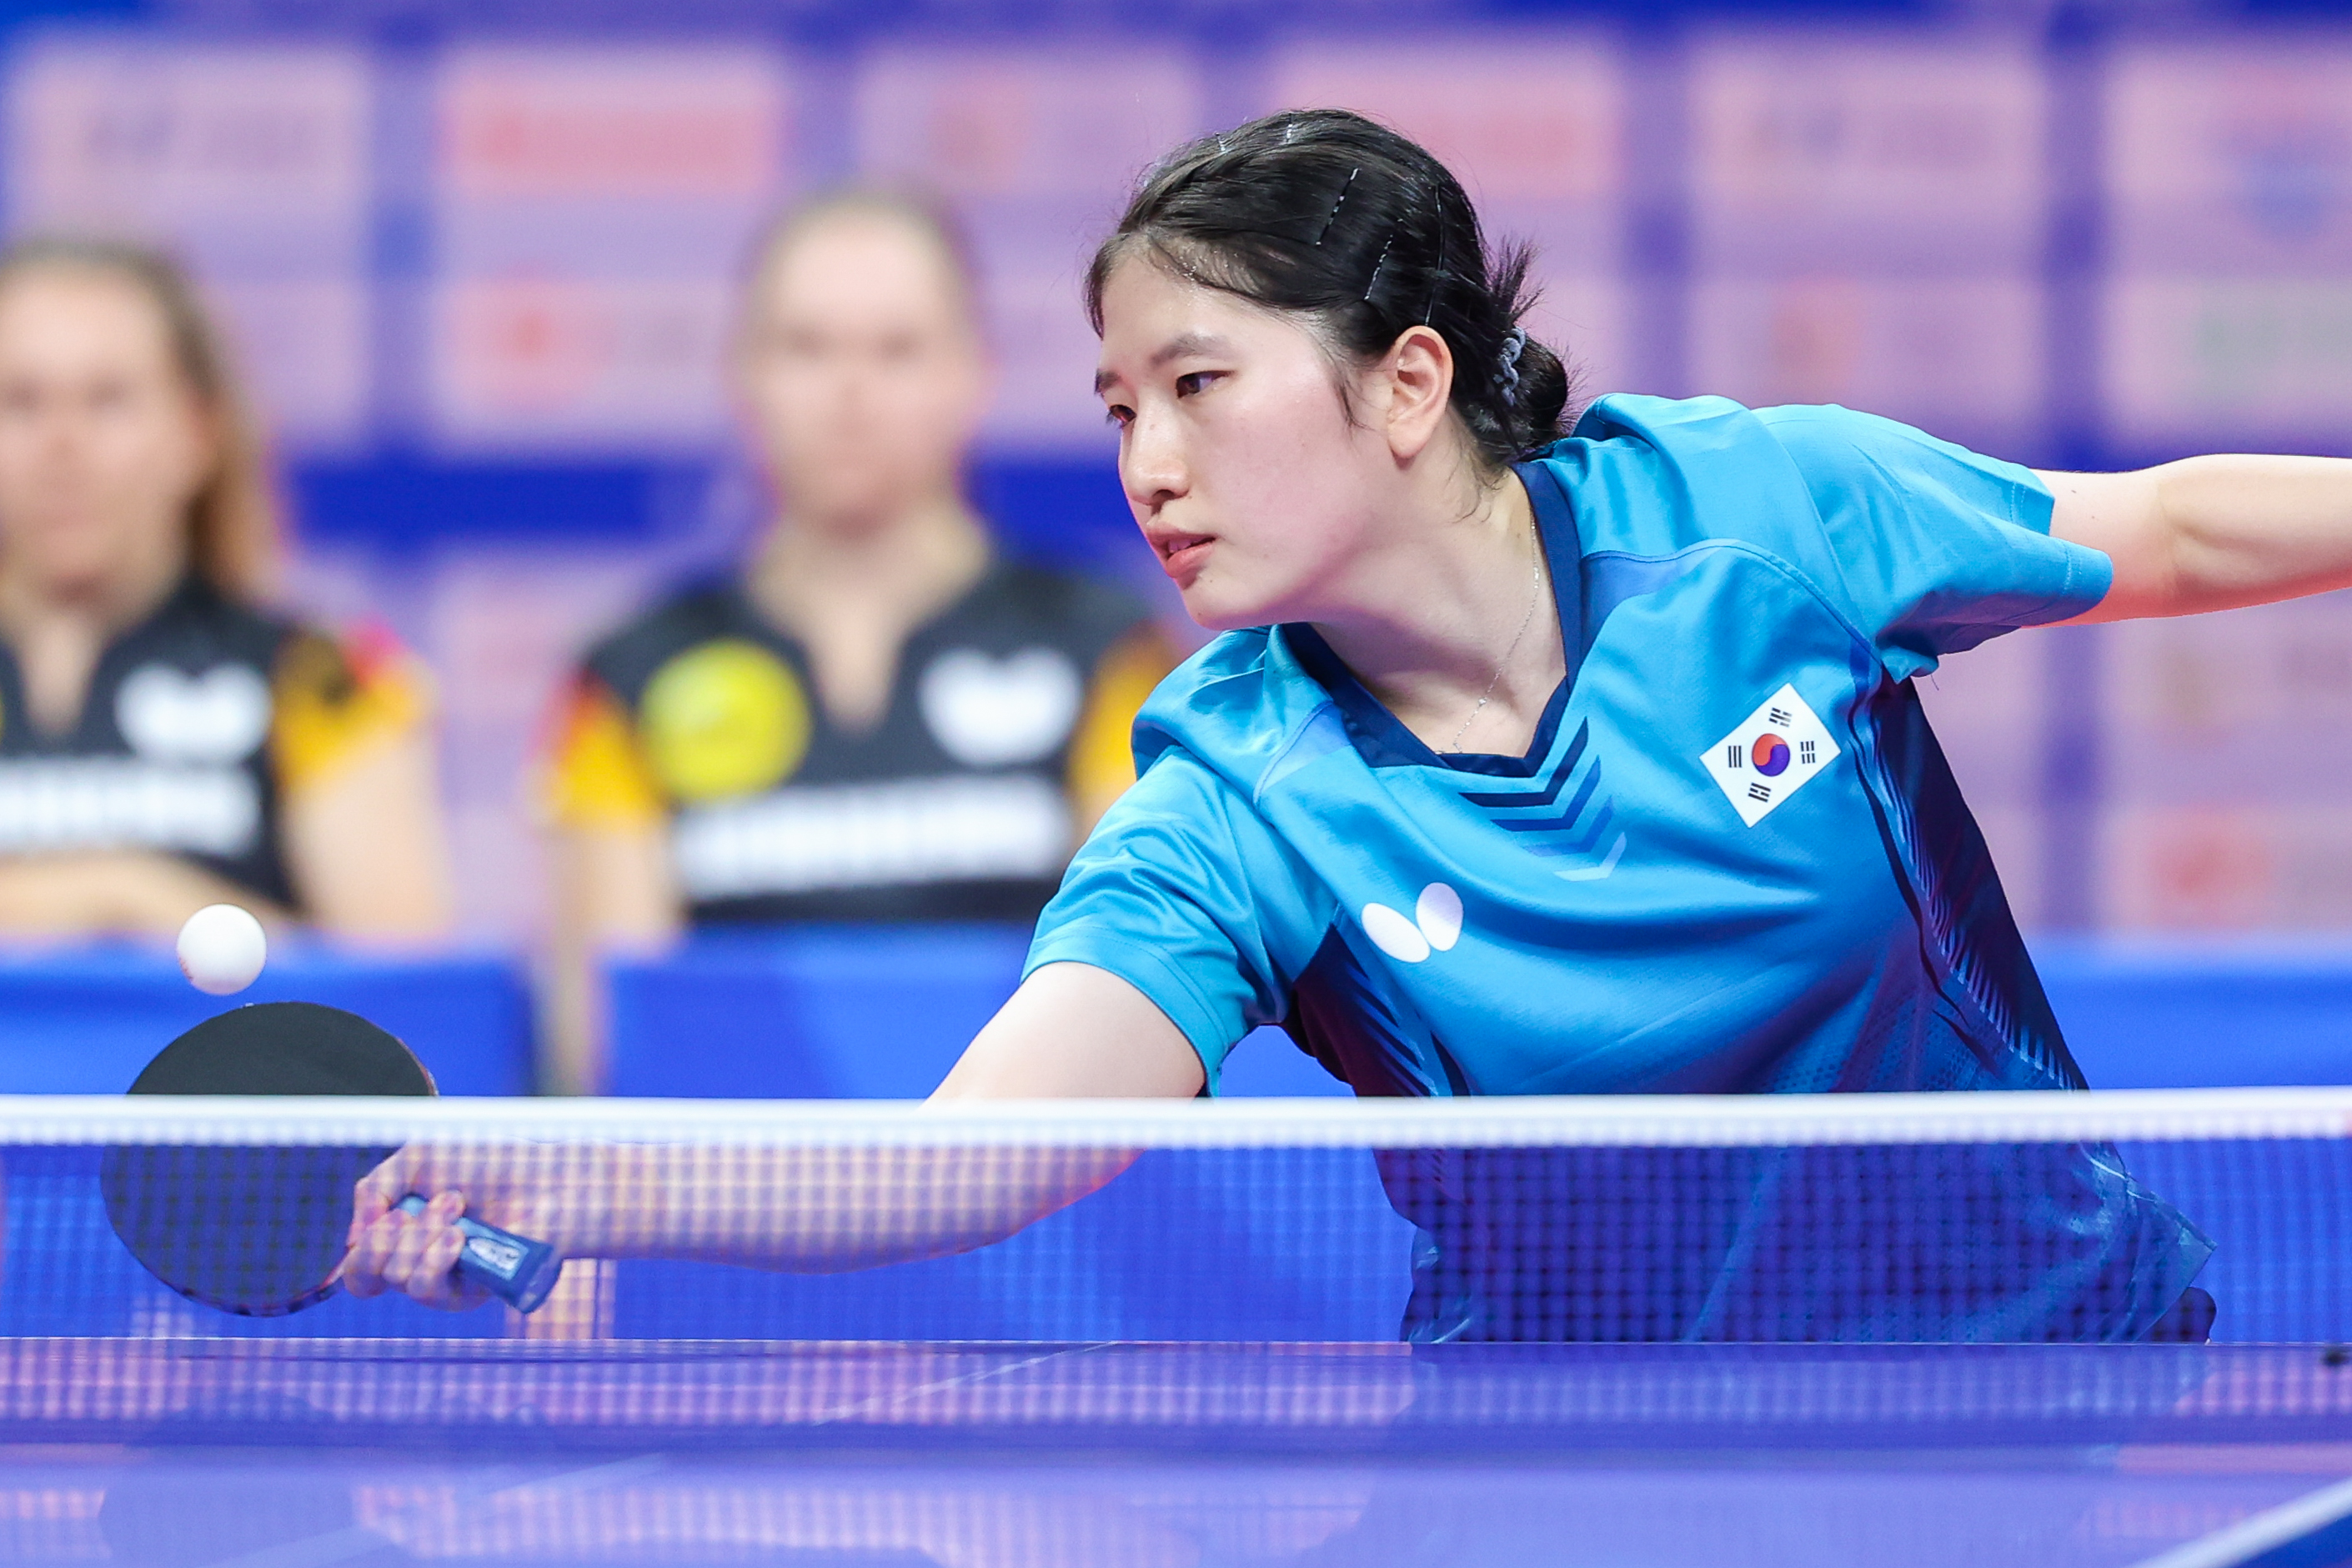 7月30日，韩国乒乓球队队员在比赛中。官方摄影团队提供